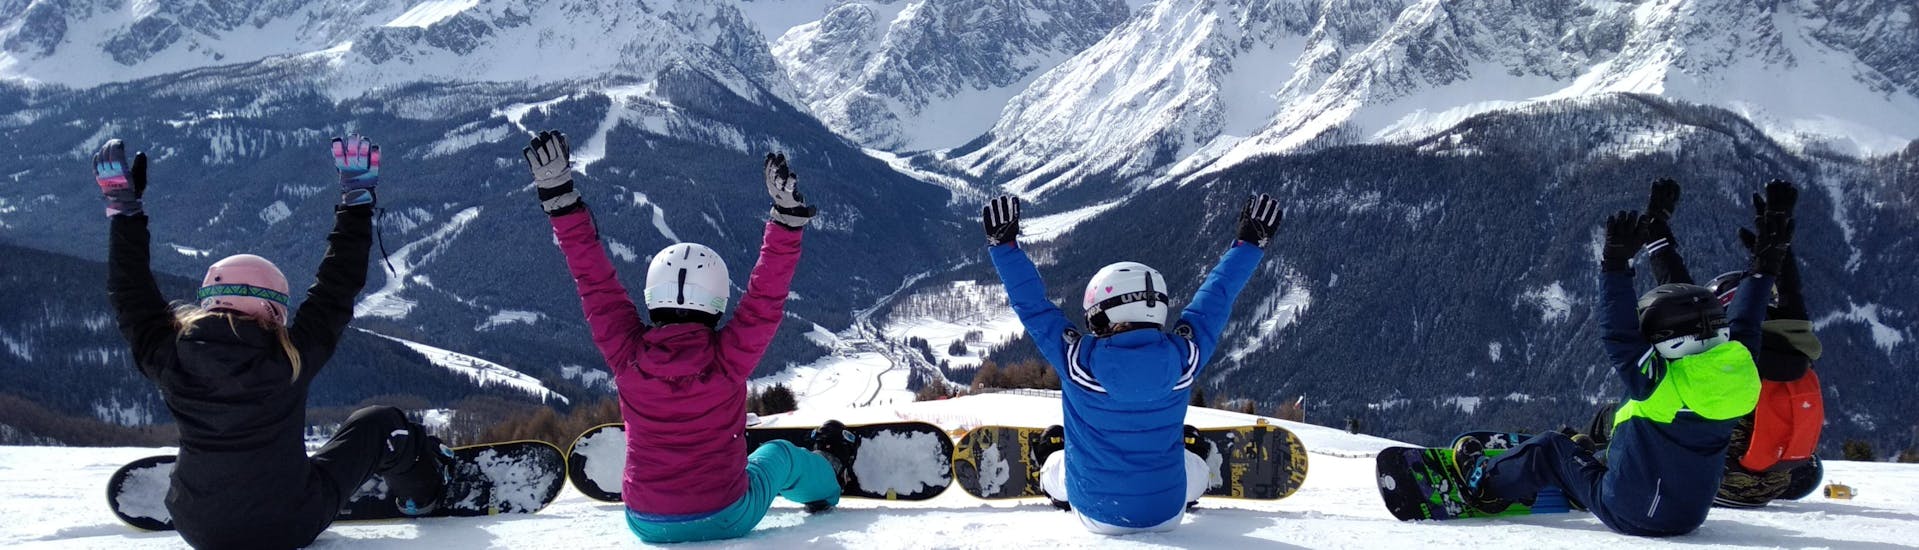 Privater Snowboardkurs für alle Levels & Altersgruppen.